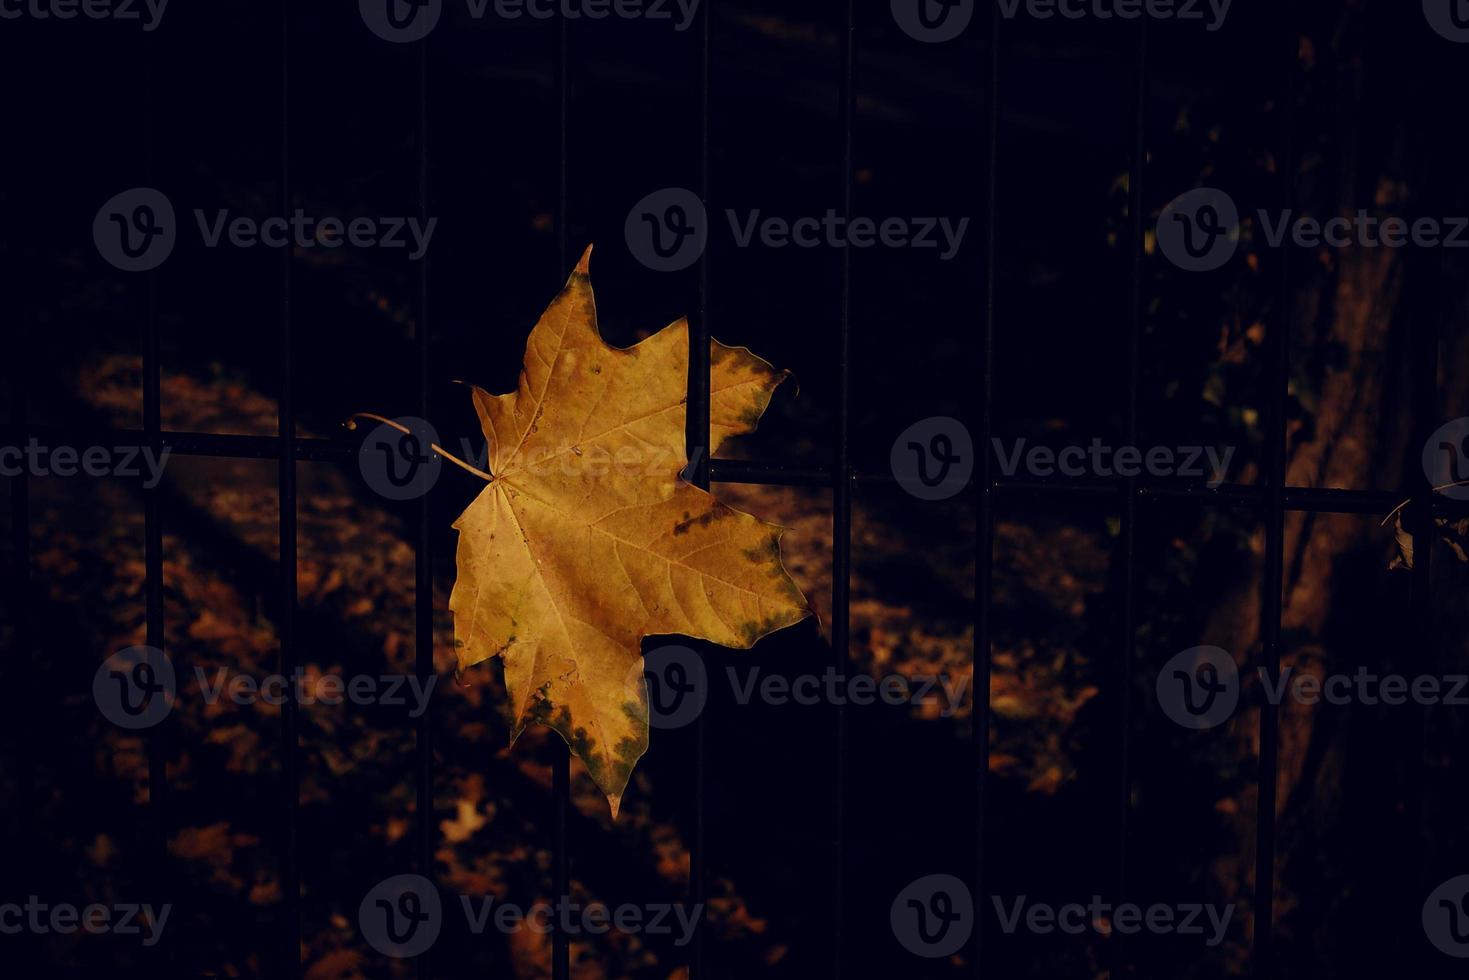 otoño dorado arce hoja en un metal cerca foto